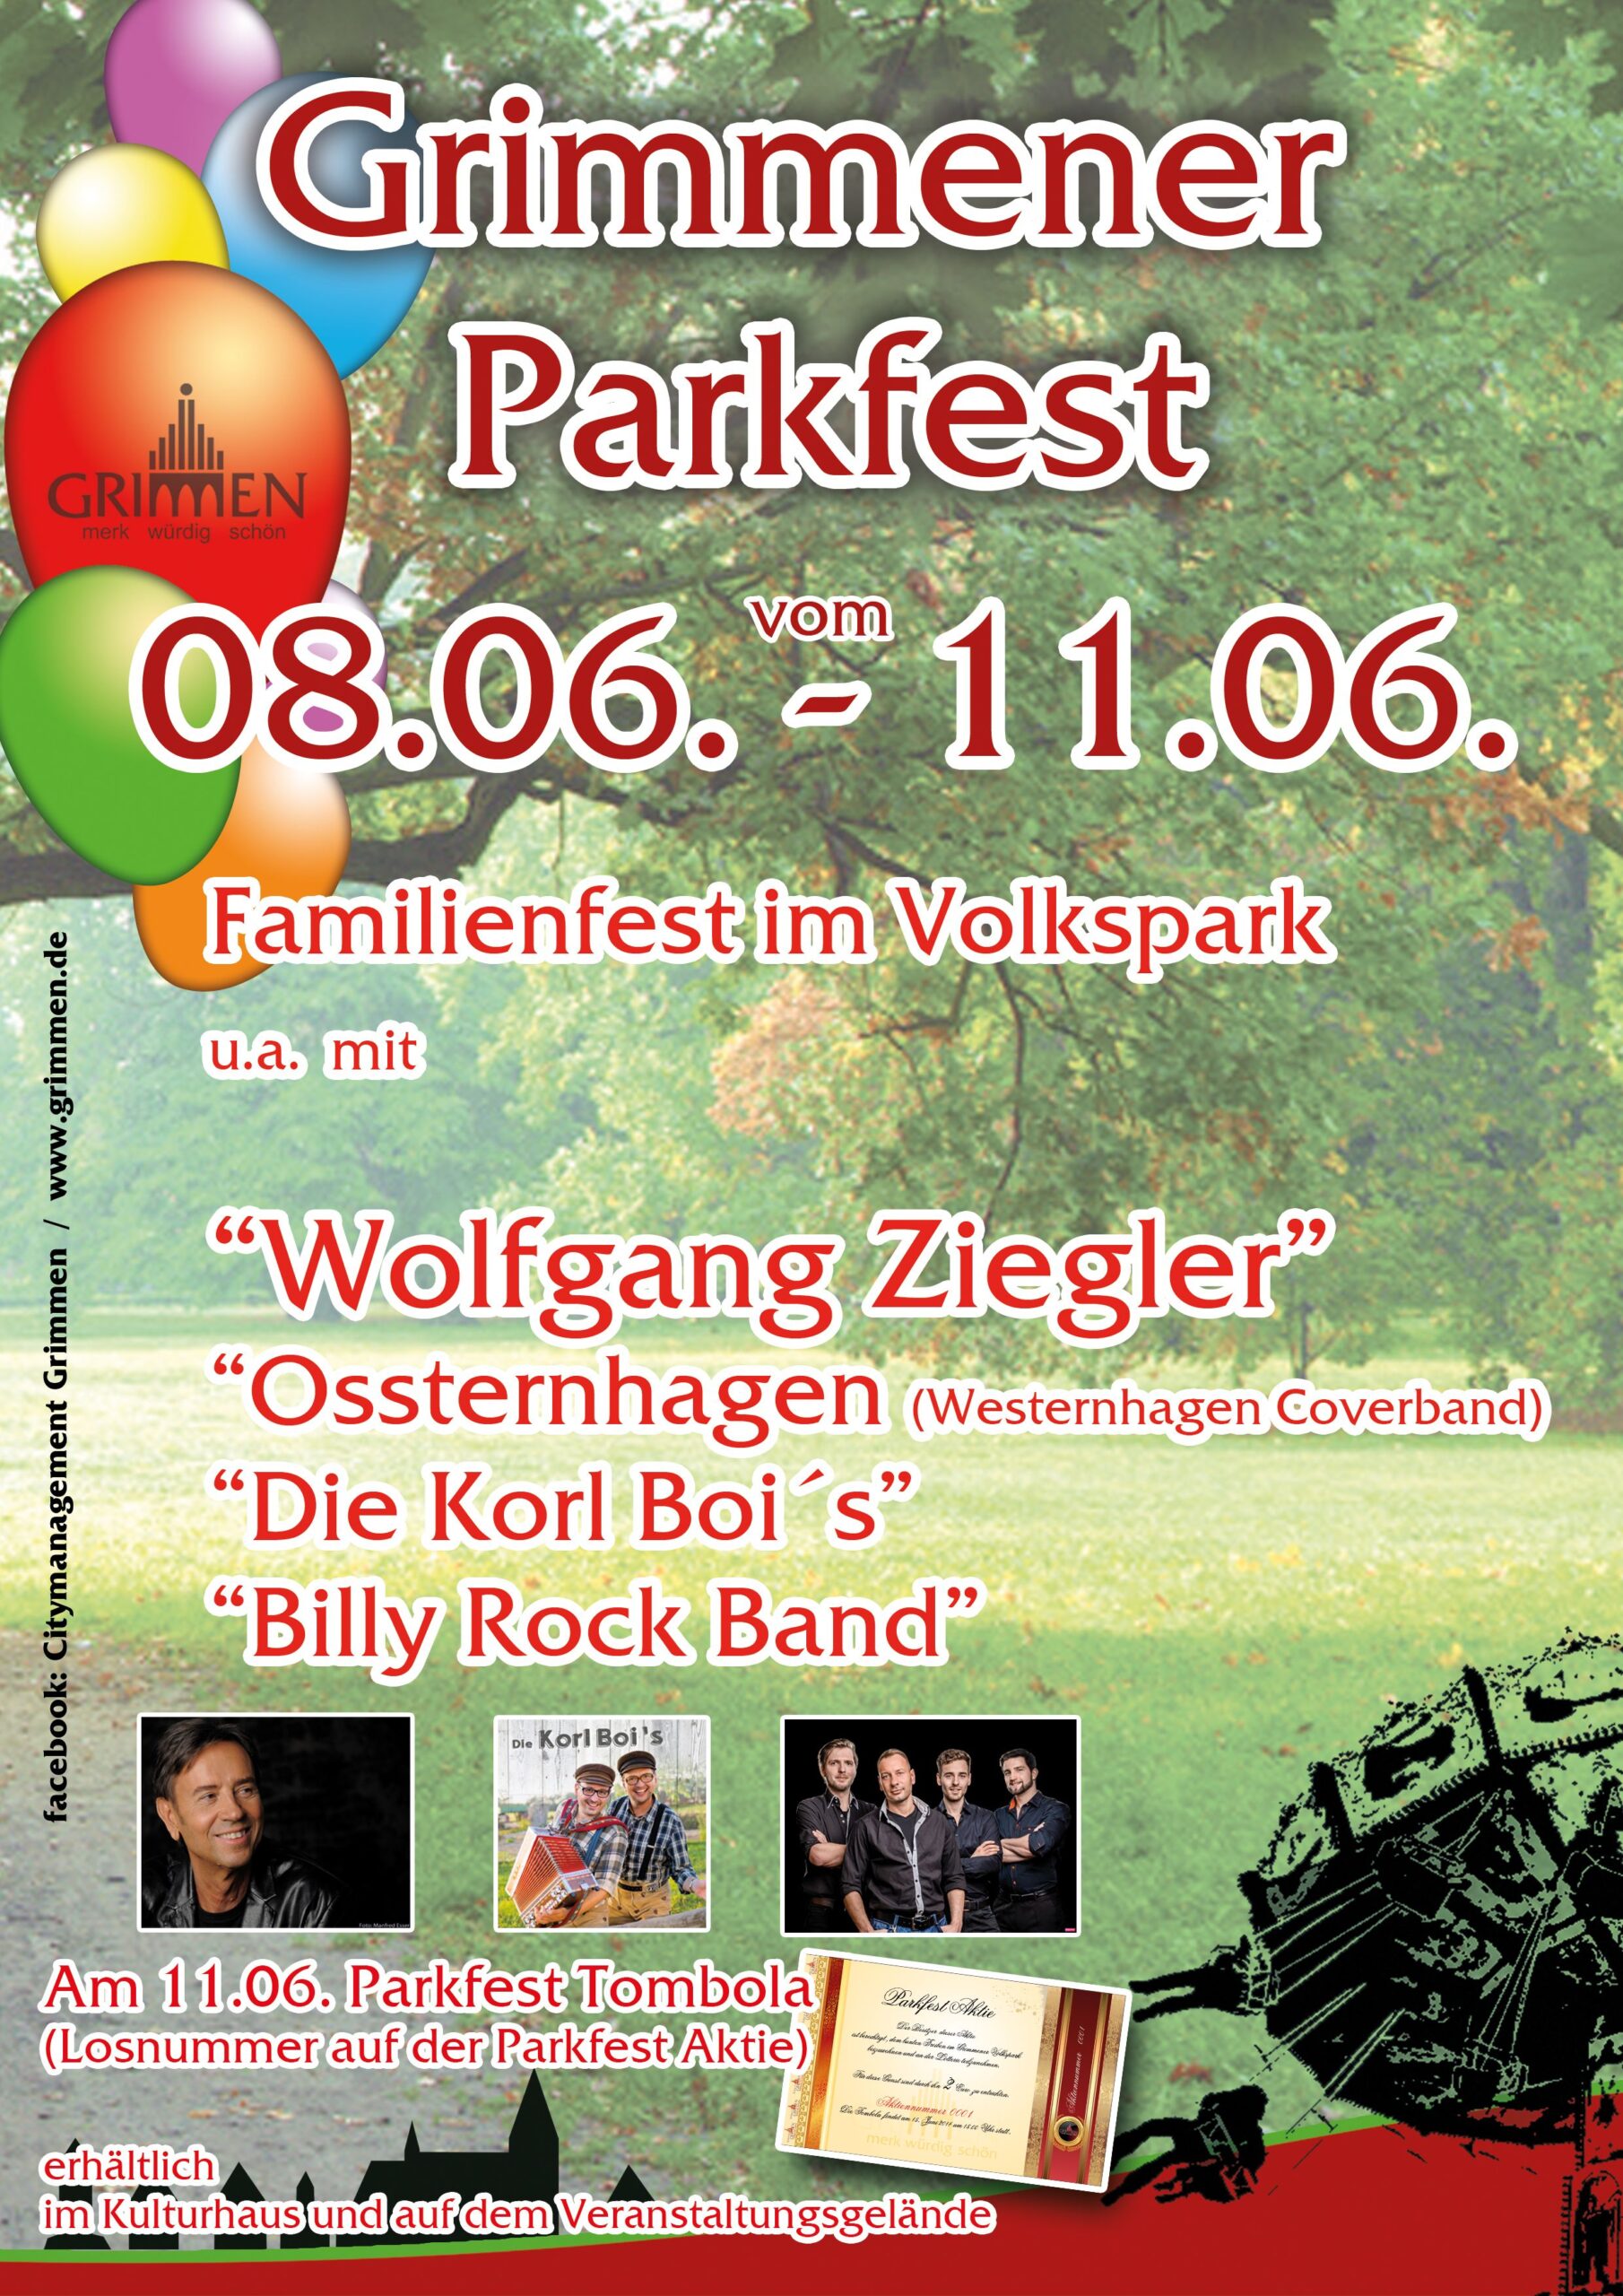 Parkfest in Grimmen